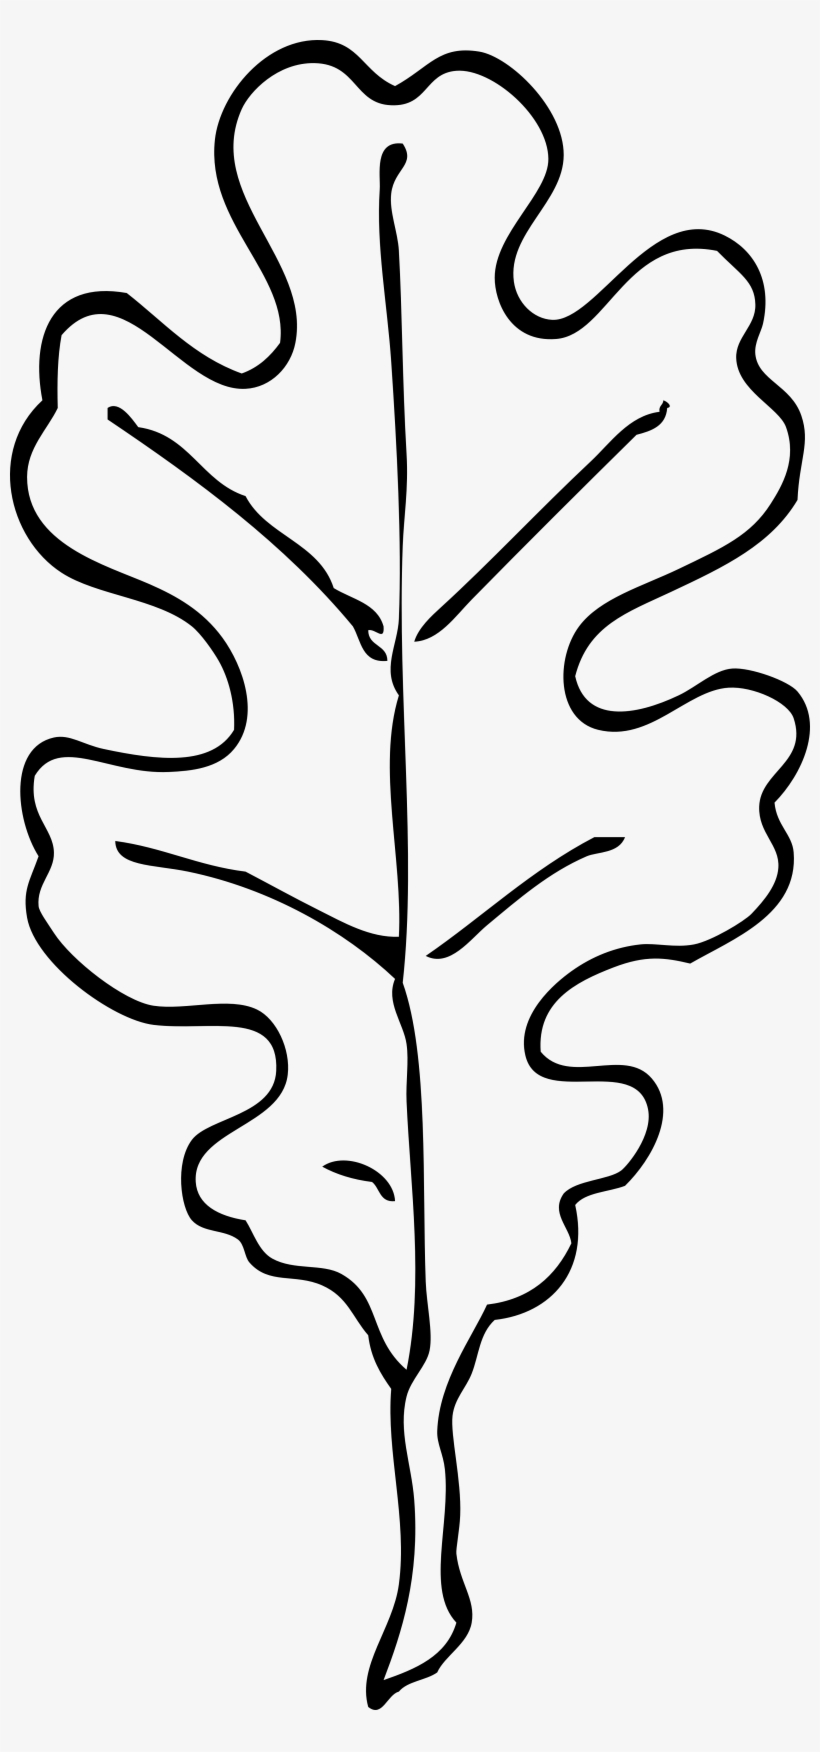 Drawn Leaves Leaf Border Png - Oak Leaf Clip Art Black And White, transparent png #190114